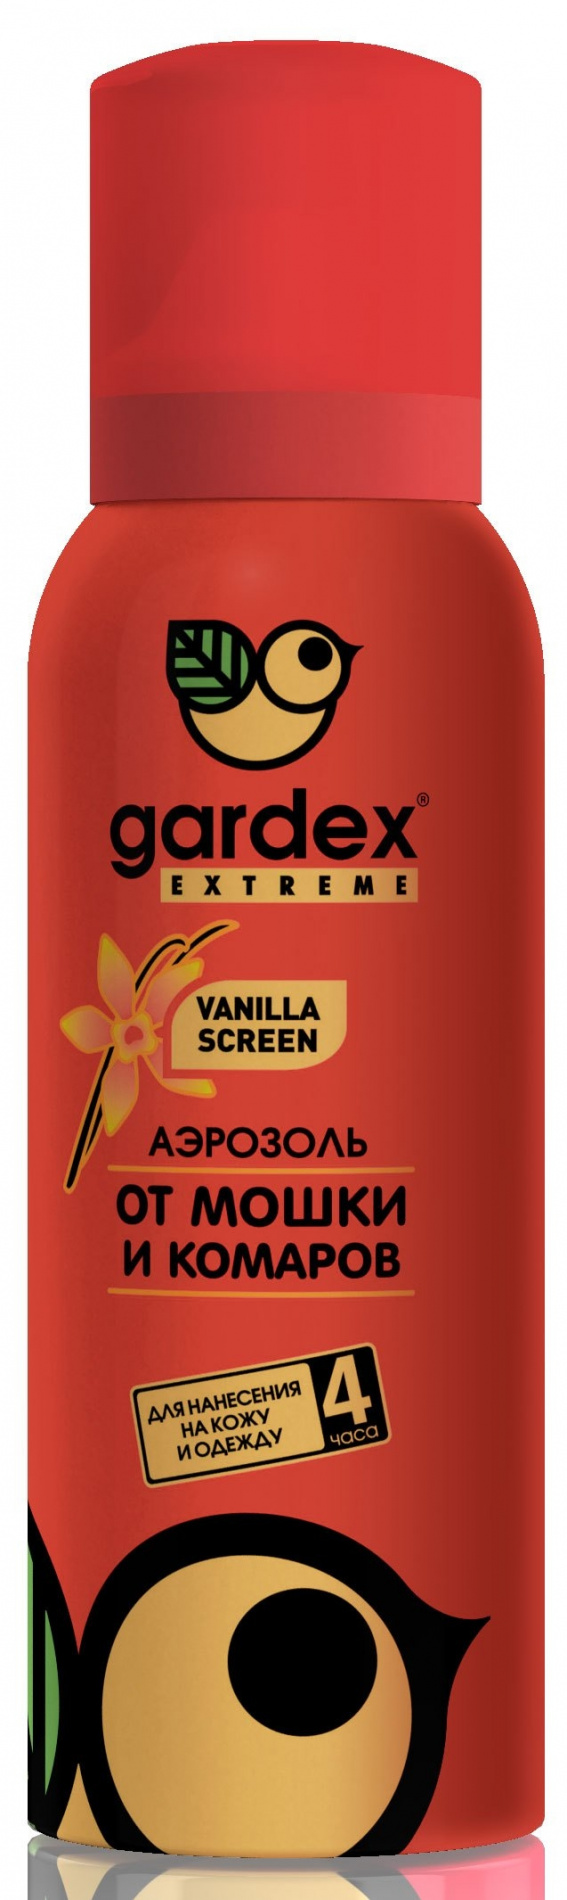 Аэрозоль Gardex Extreme от мошек и комаров 100мл